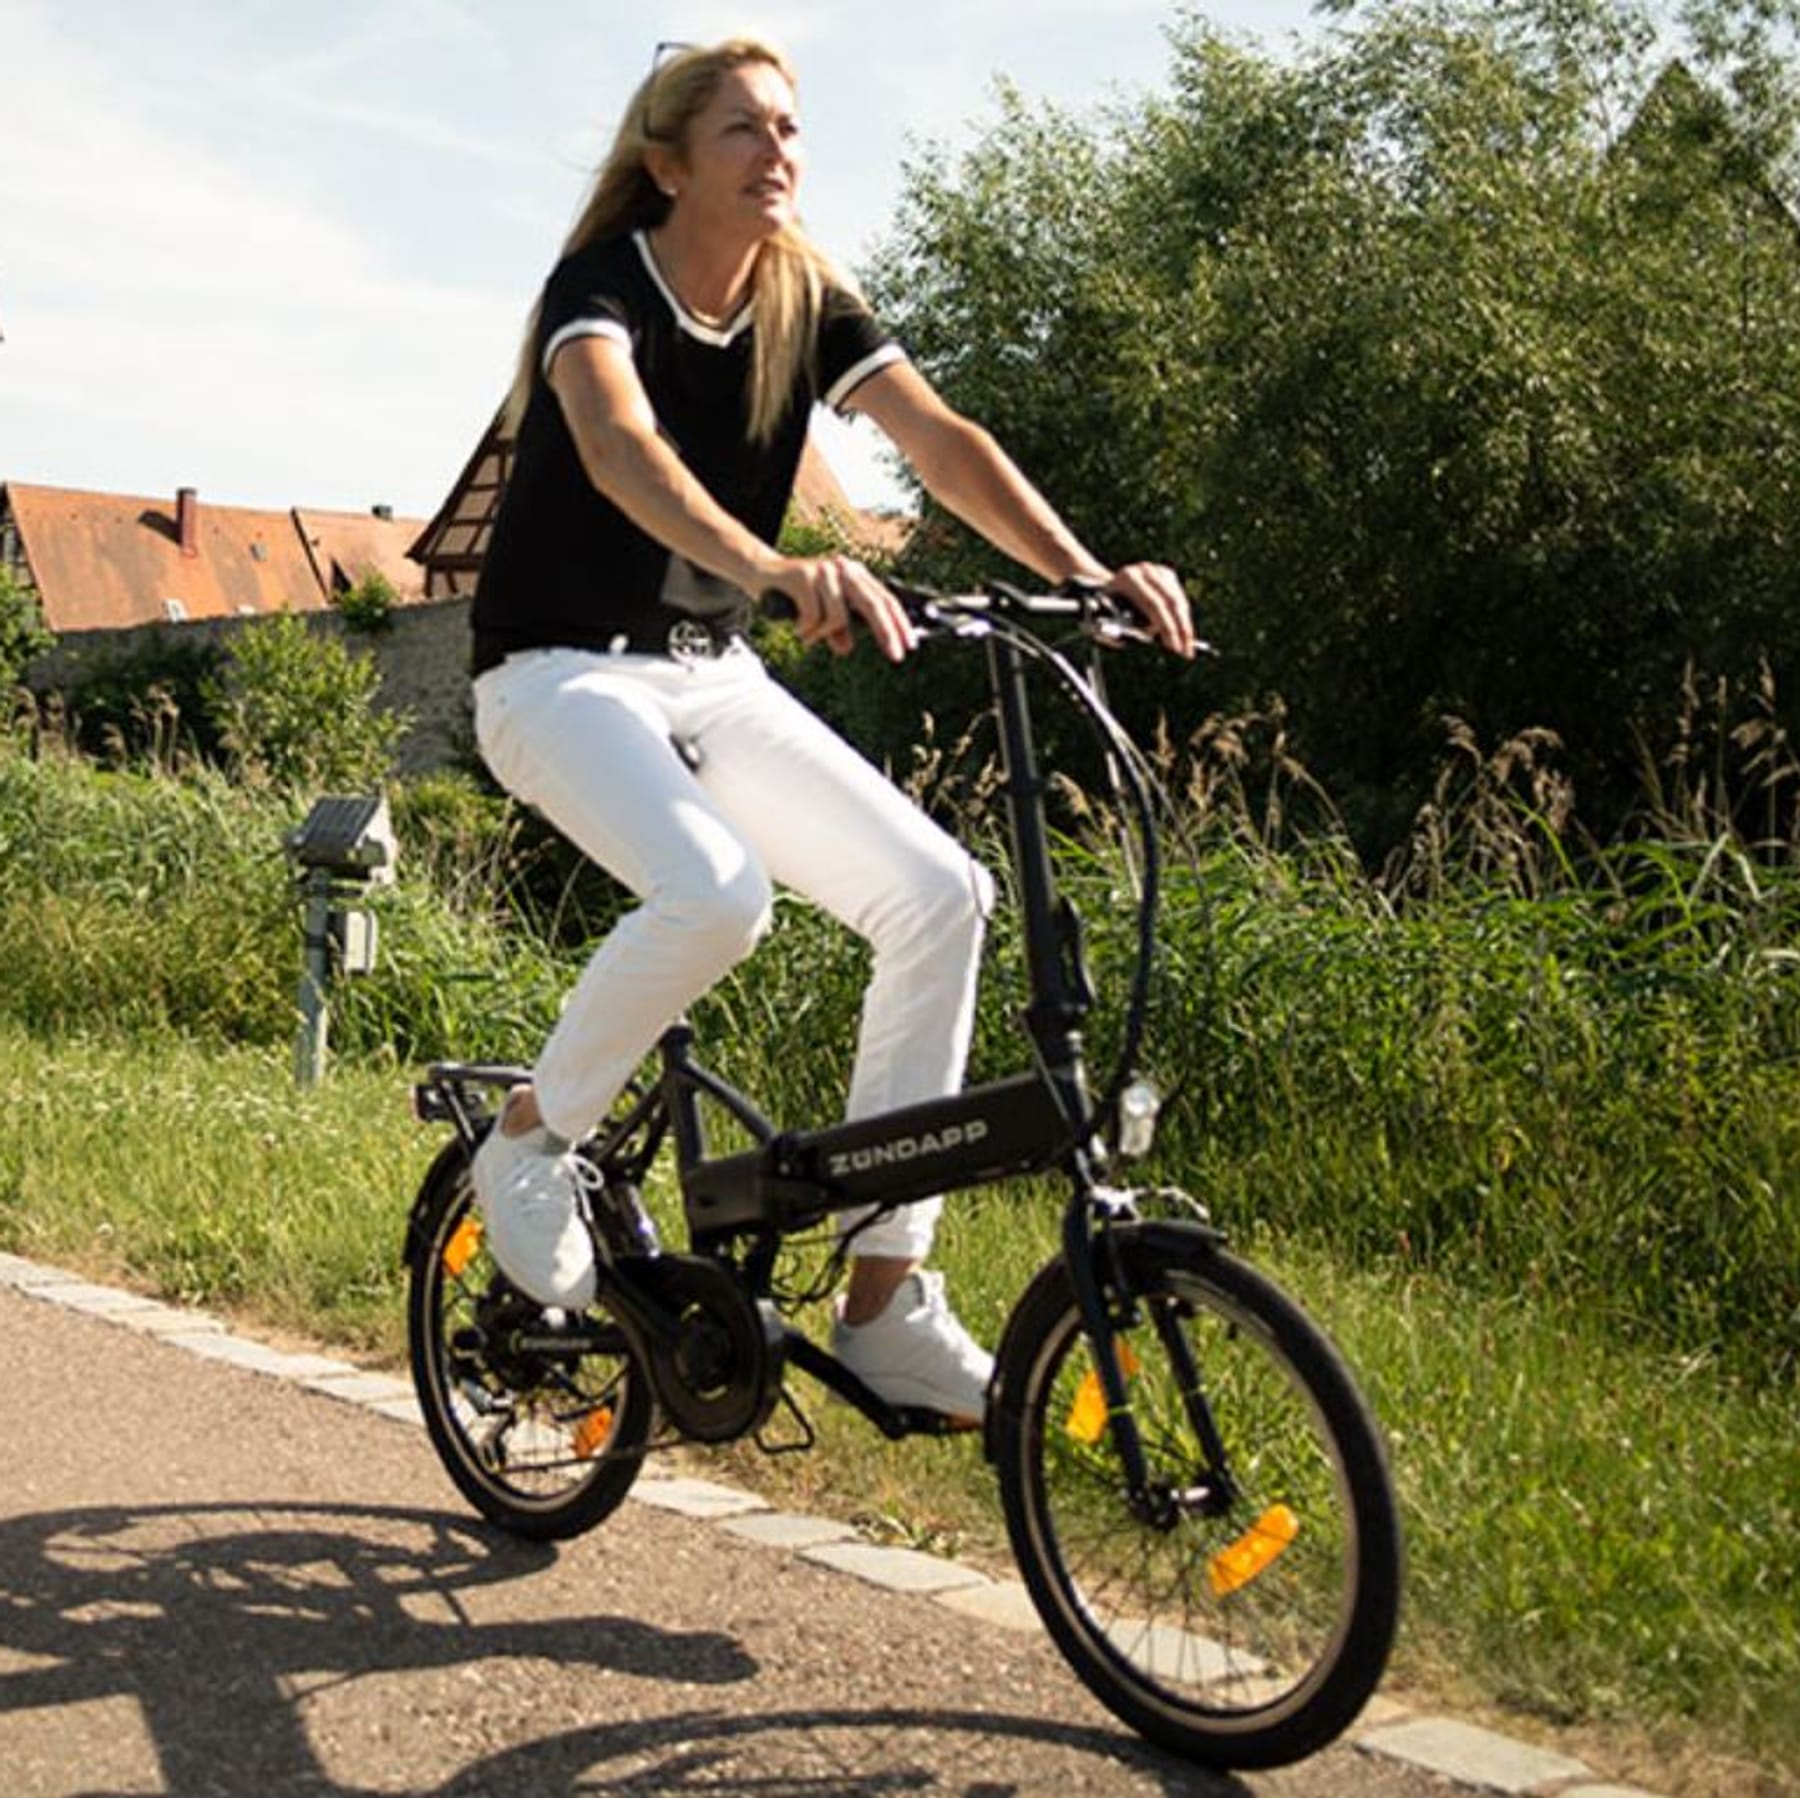 Prophete, erhältlich zu heute von Co. und Züdapp Tiefstpreisen E-Bikes